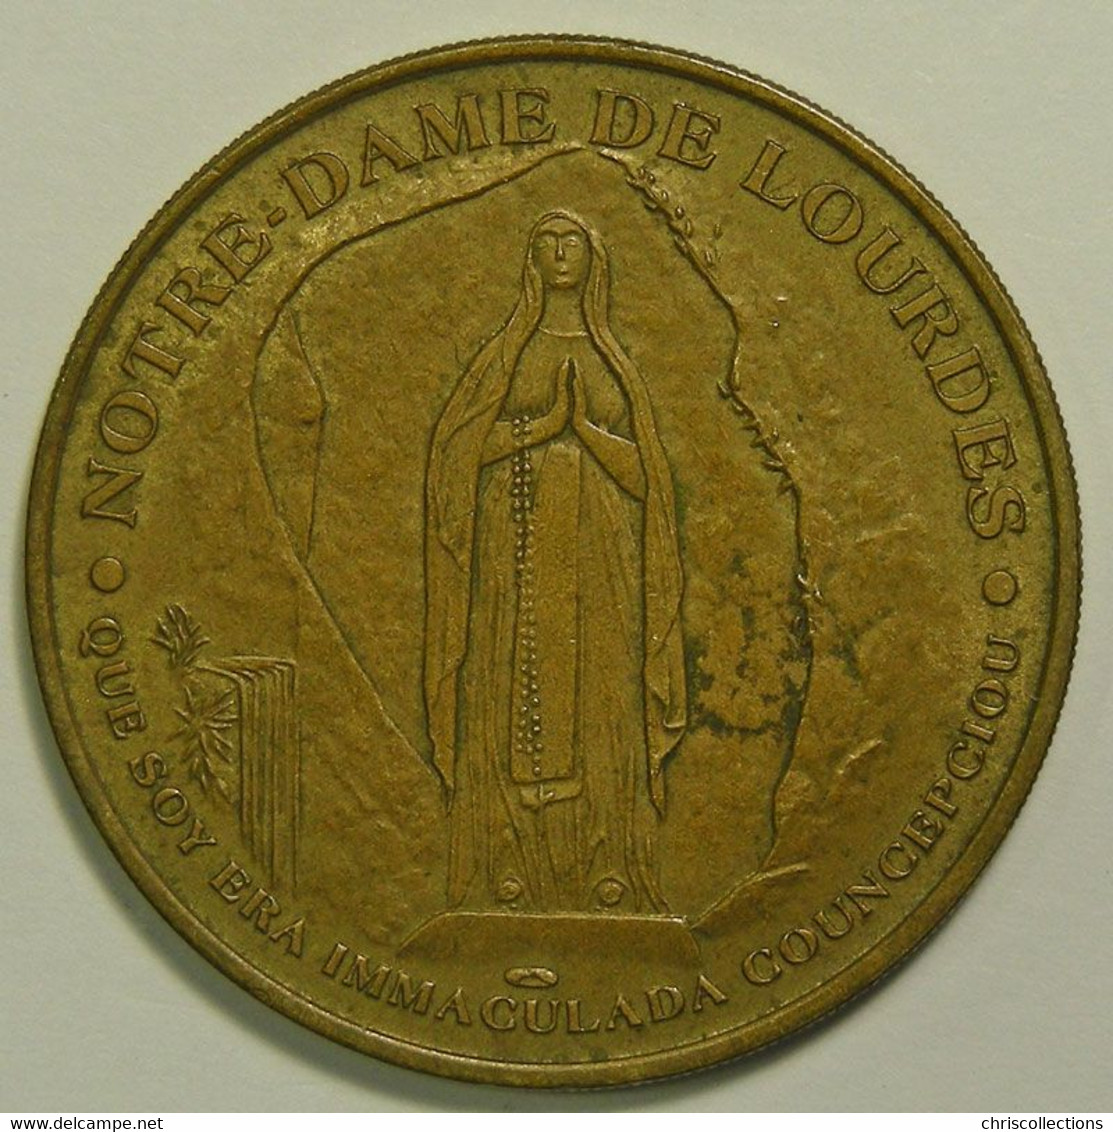 Lourdes, Jubilaeum, 2000 - 2000